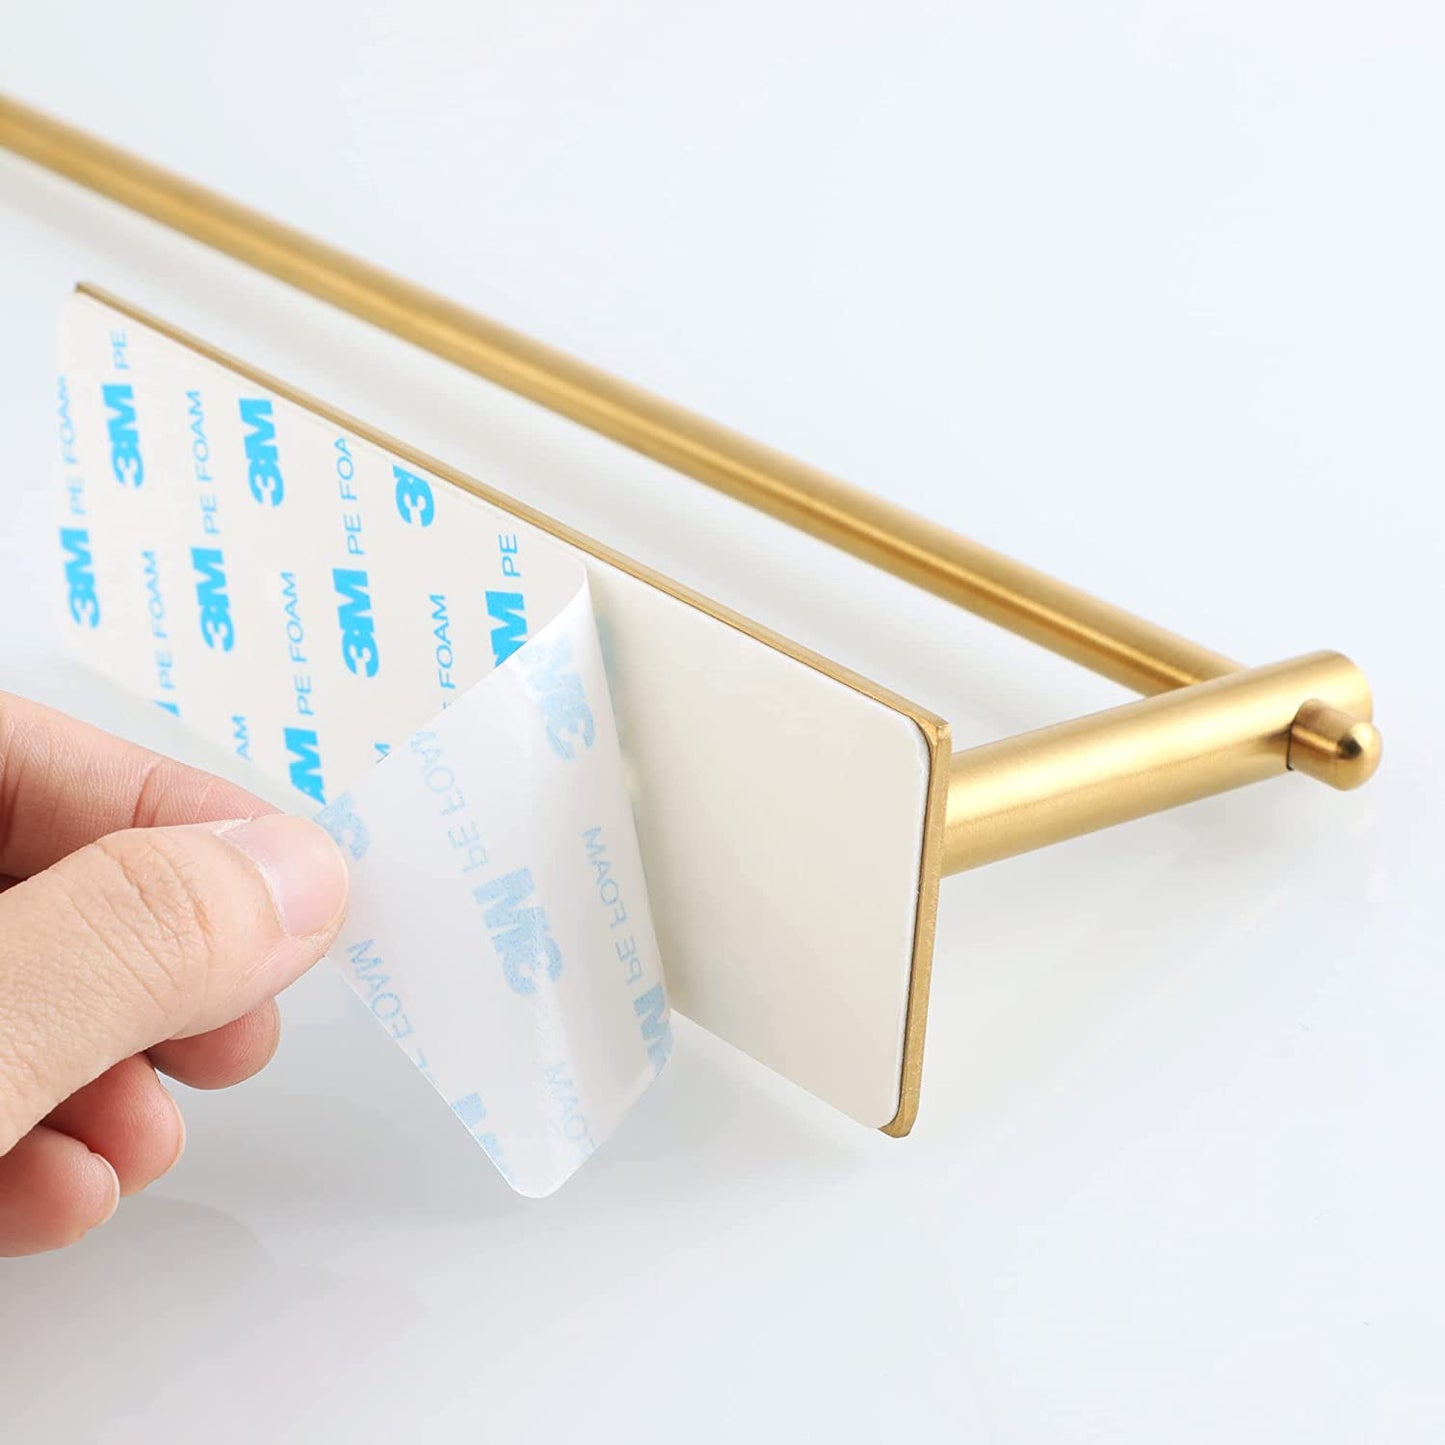 Self-Adhesive Paper Towel Holder